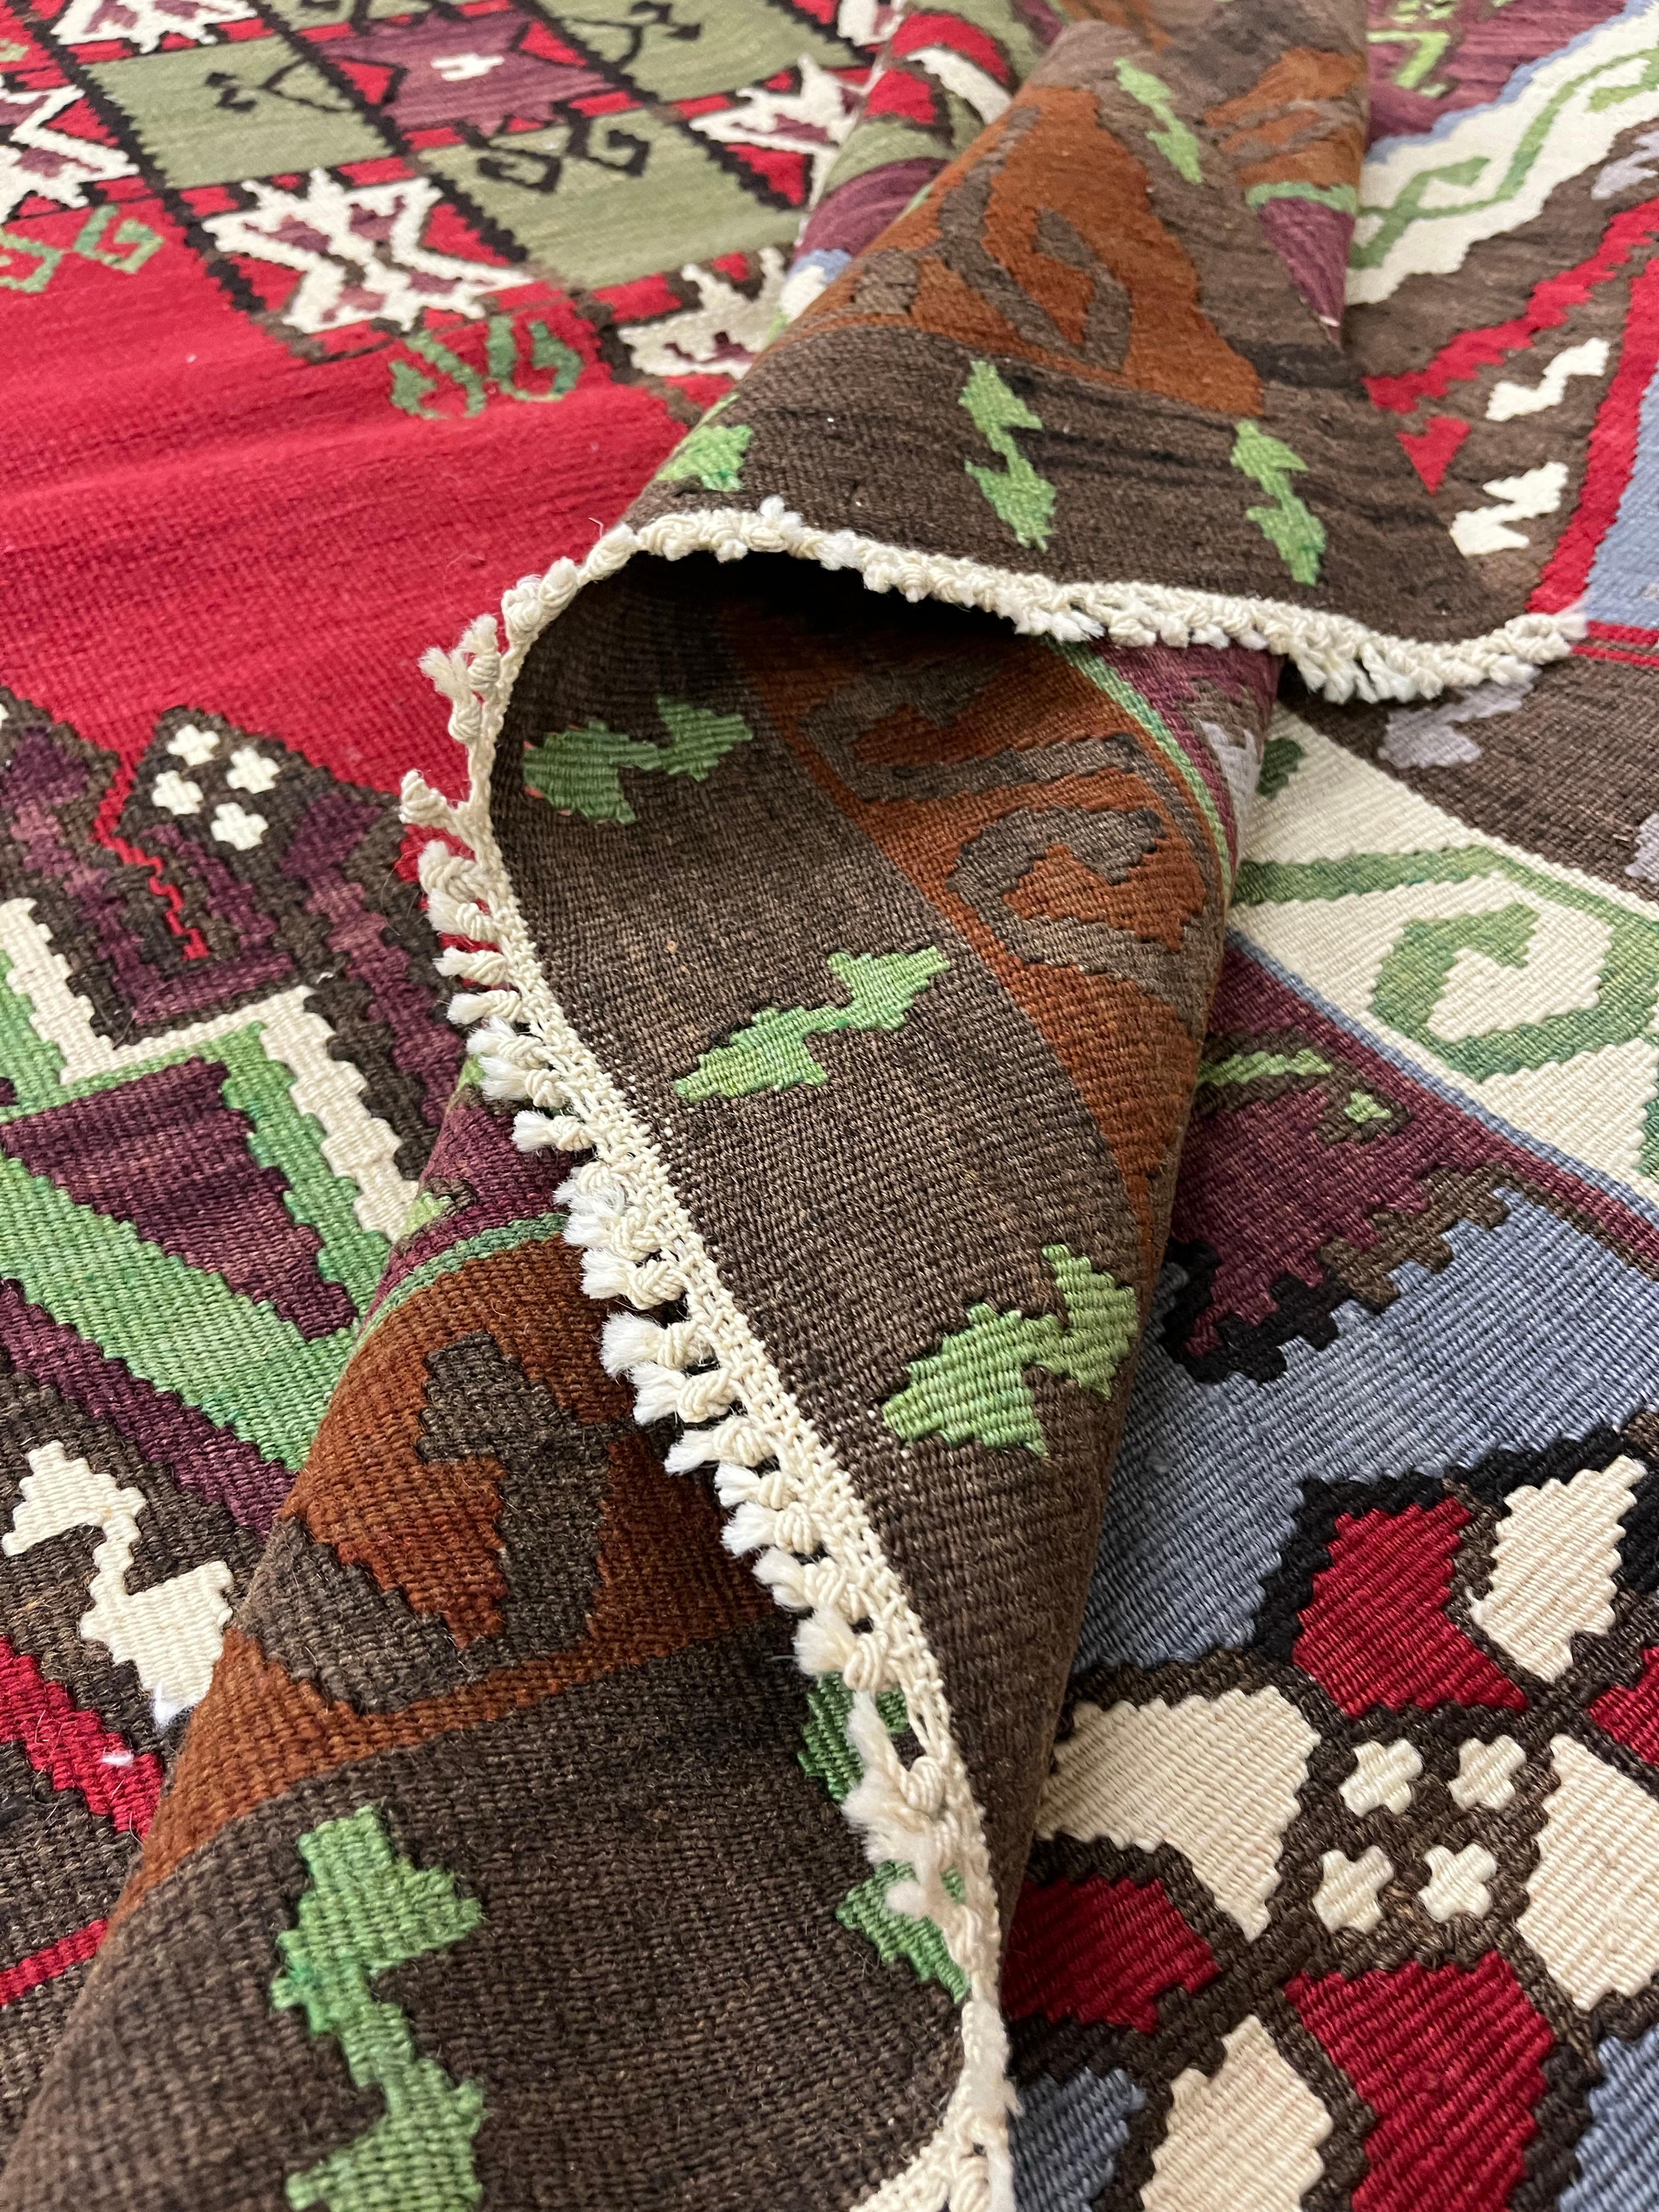 Ce kilim turc en laine fine est un tapis tissé à plat à la main. Il présente un médaillon central audacieux tissé dans des accents de vert, de brun et de crème sur un fond rouge. Il est entouré d'un motif symétrique comportant divers motifs